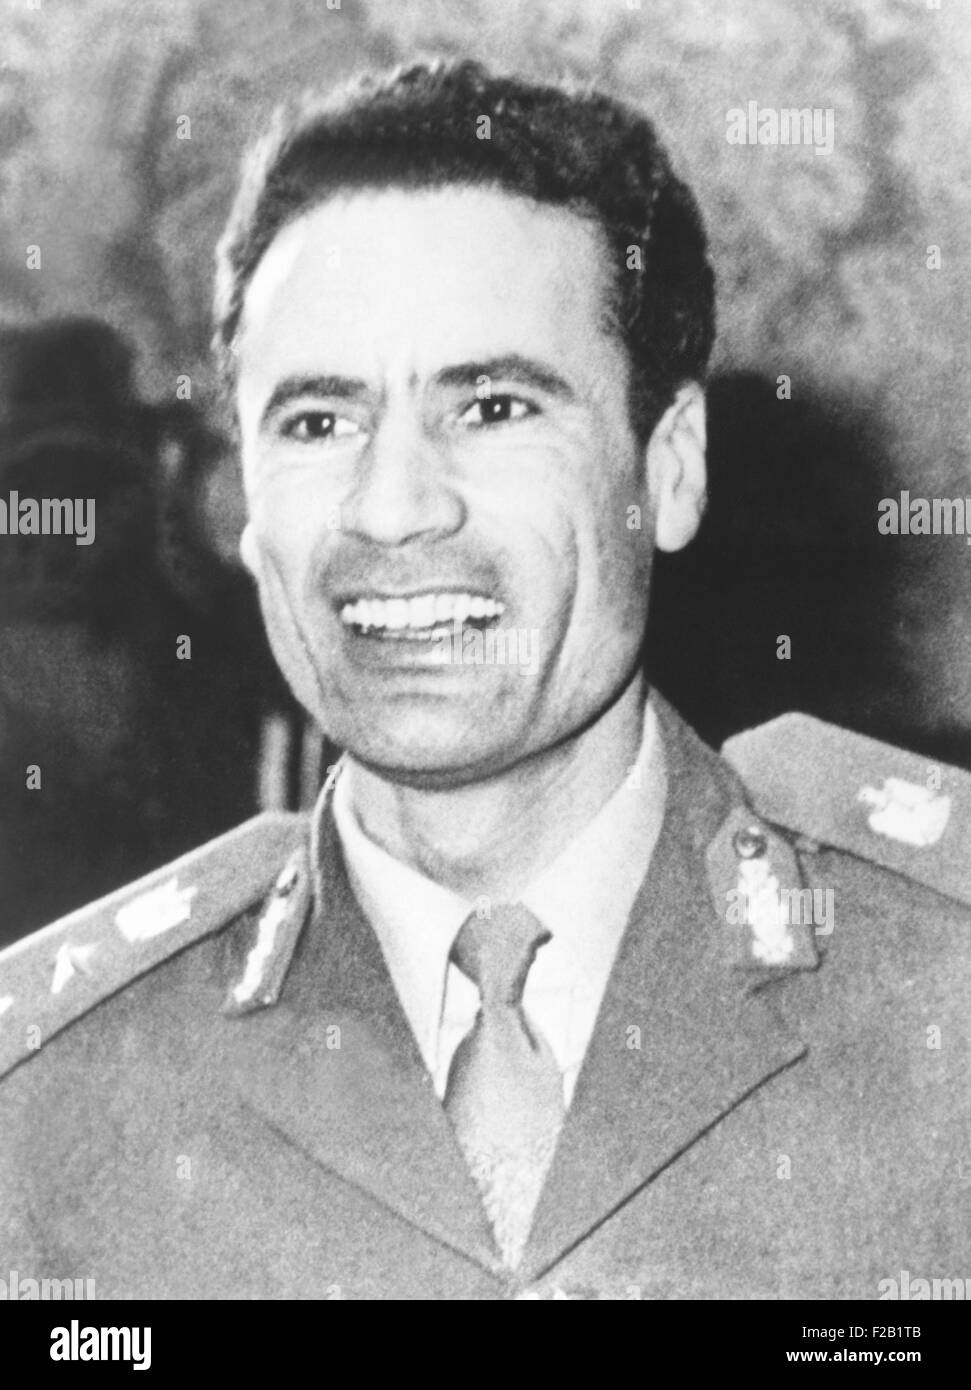 1974-Foto von Muammar Gaddafi, die nach 1969 Staatsstreich die Macht in Libyen kam. Er regierte als "revolutionäre Vorstandsvorsitzender der Libysch-Arabischen Republik" von 1969 bis 1977, und dann als "Brüderlichen Leader" von der großen sozialistischen Volksrepublik Libysch-Arabische Dschamahirija, von 1977 bis 2011. Volks-Dschamahirija war ein Begriff von Gaddafi, normalerweise übersetzt als "Staat der Massen". (CSU 2015 7 416) Stockfoto